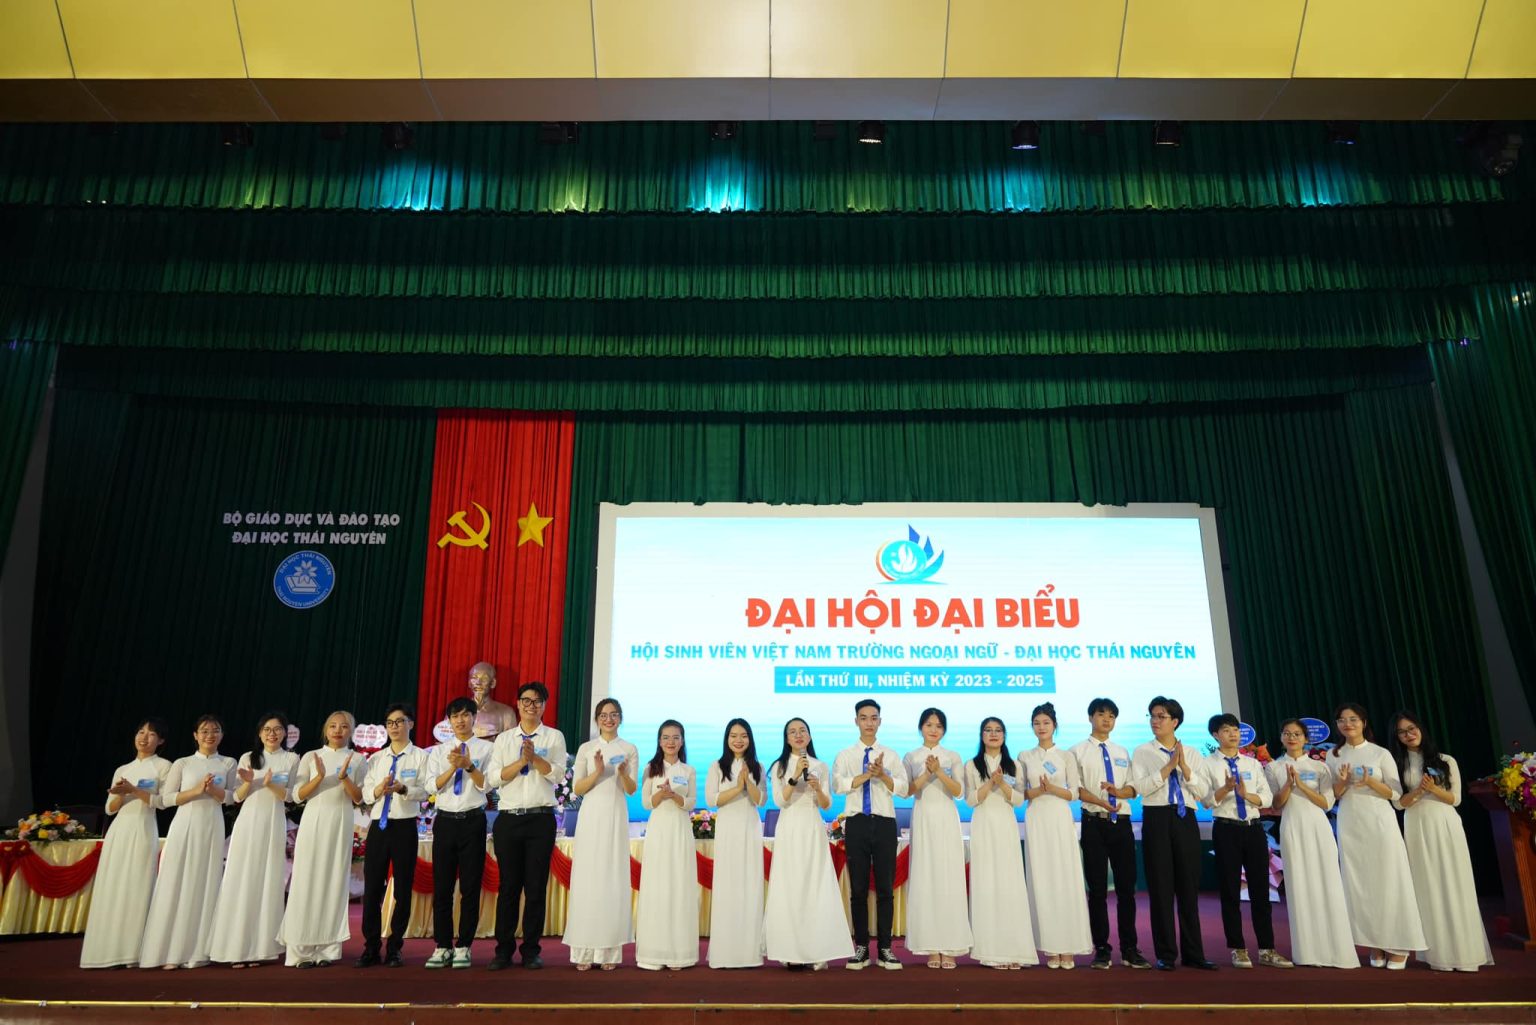 Đại hội Đại biểu Hội Sinh viên Việt Nam Trường Ngoại ngữ, Đại học Thái Nguyên lần thứ III, nhiệm kỳ 2023 – 2025 đã diễn ra thành công tốt đẹp